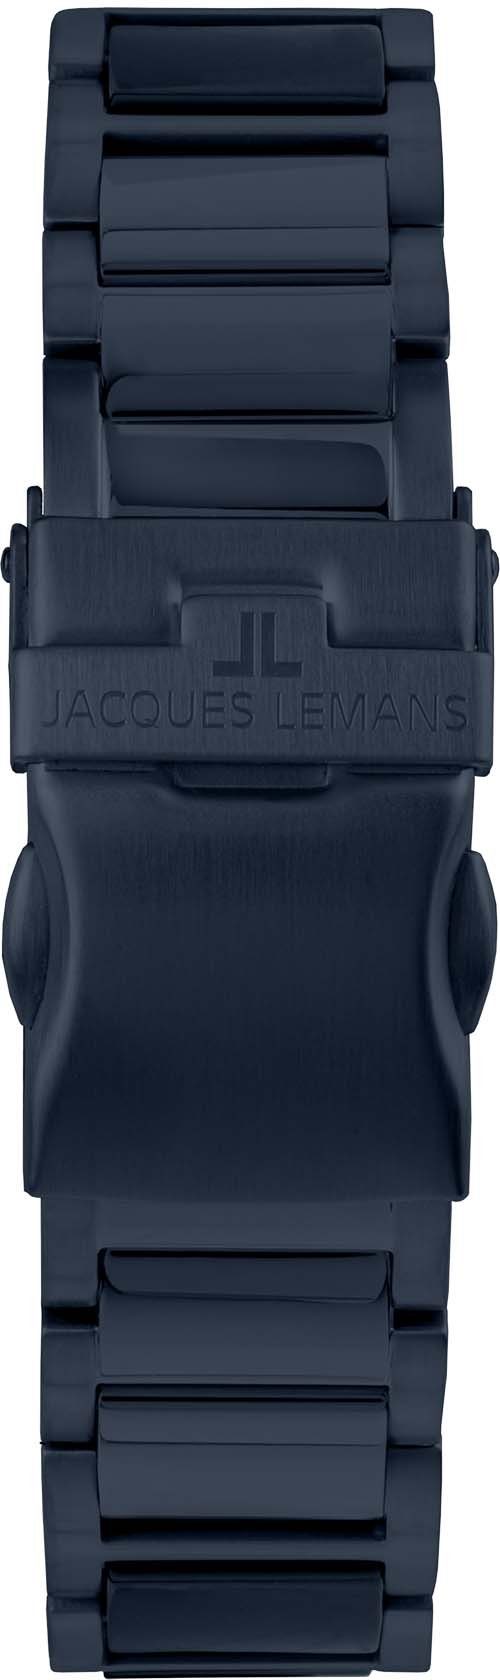 Jacques Lemans Keramikuhr Liverpool, 42-12E